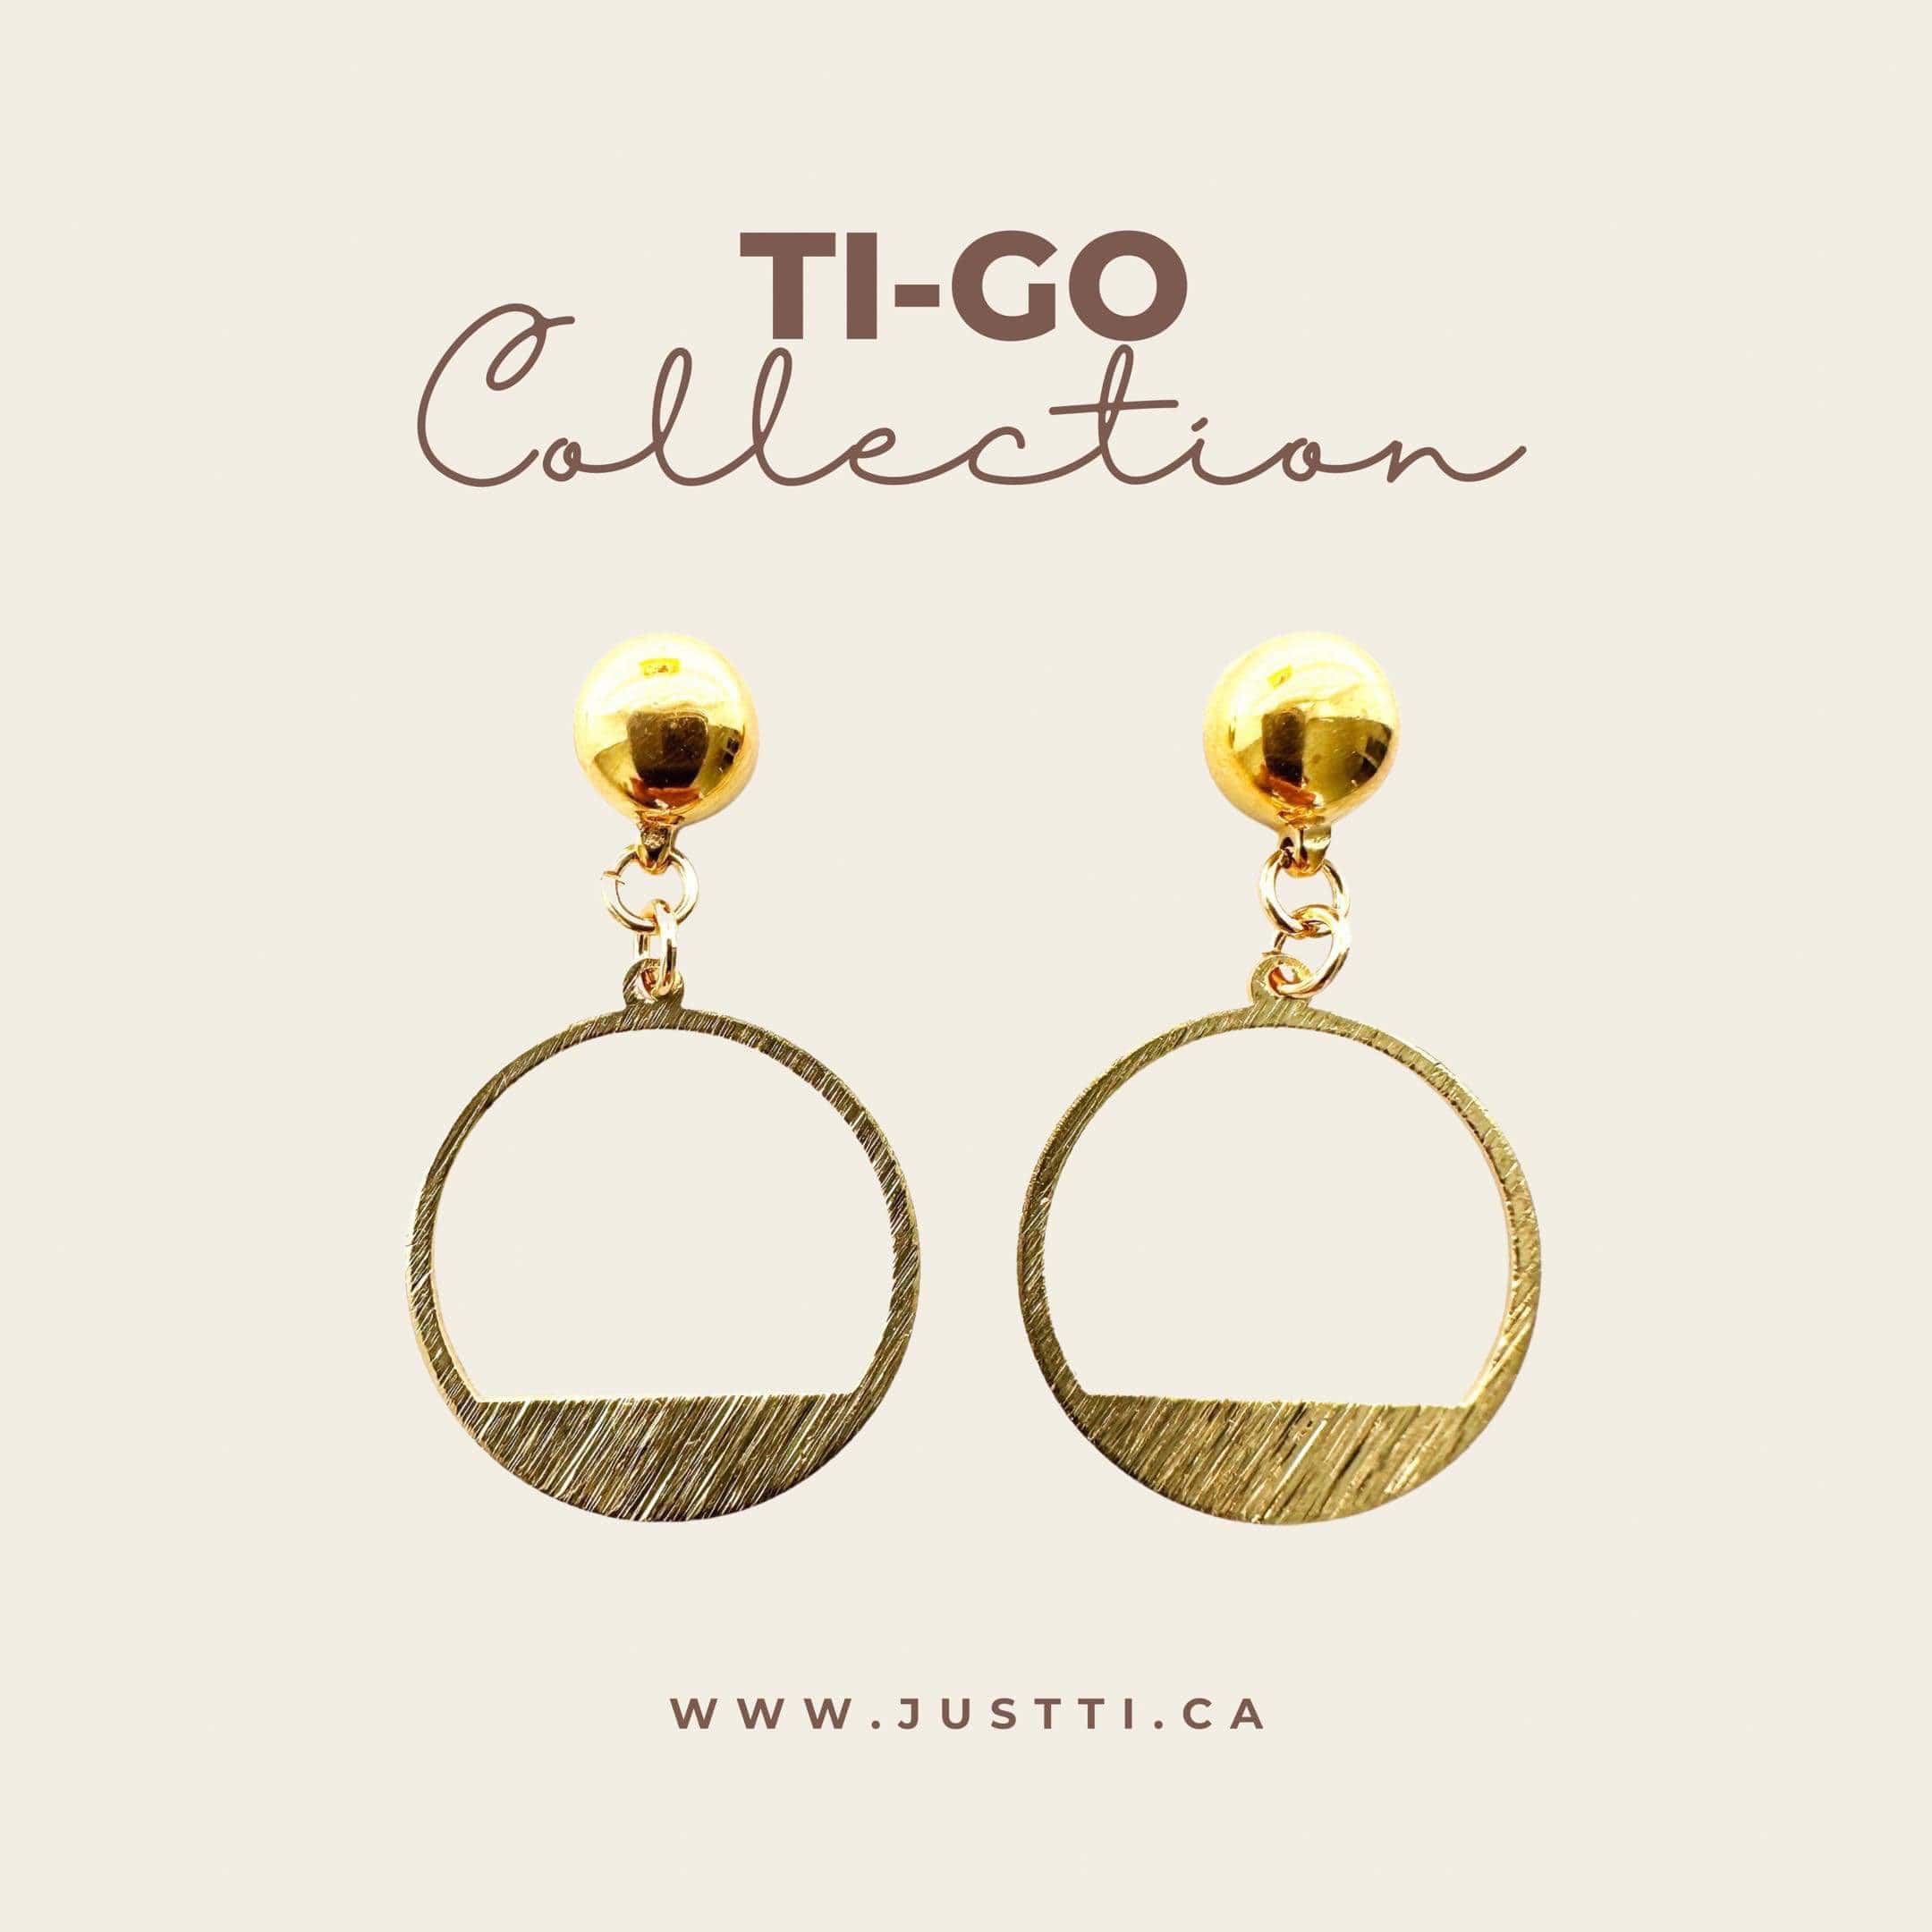 Ti-Go Golden rings earring